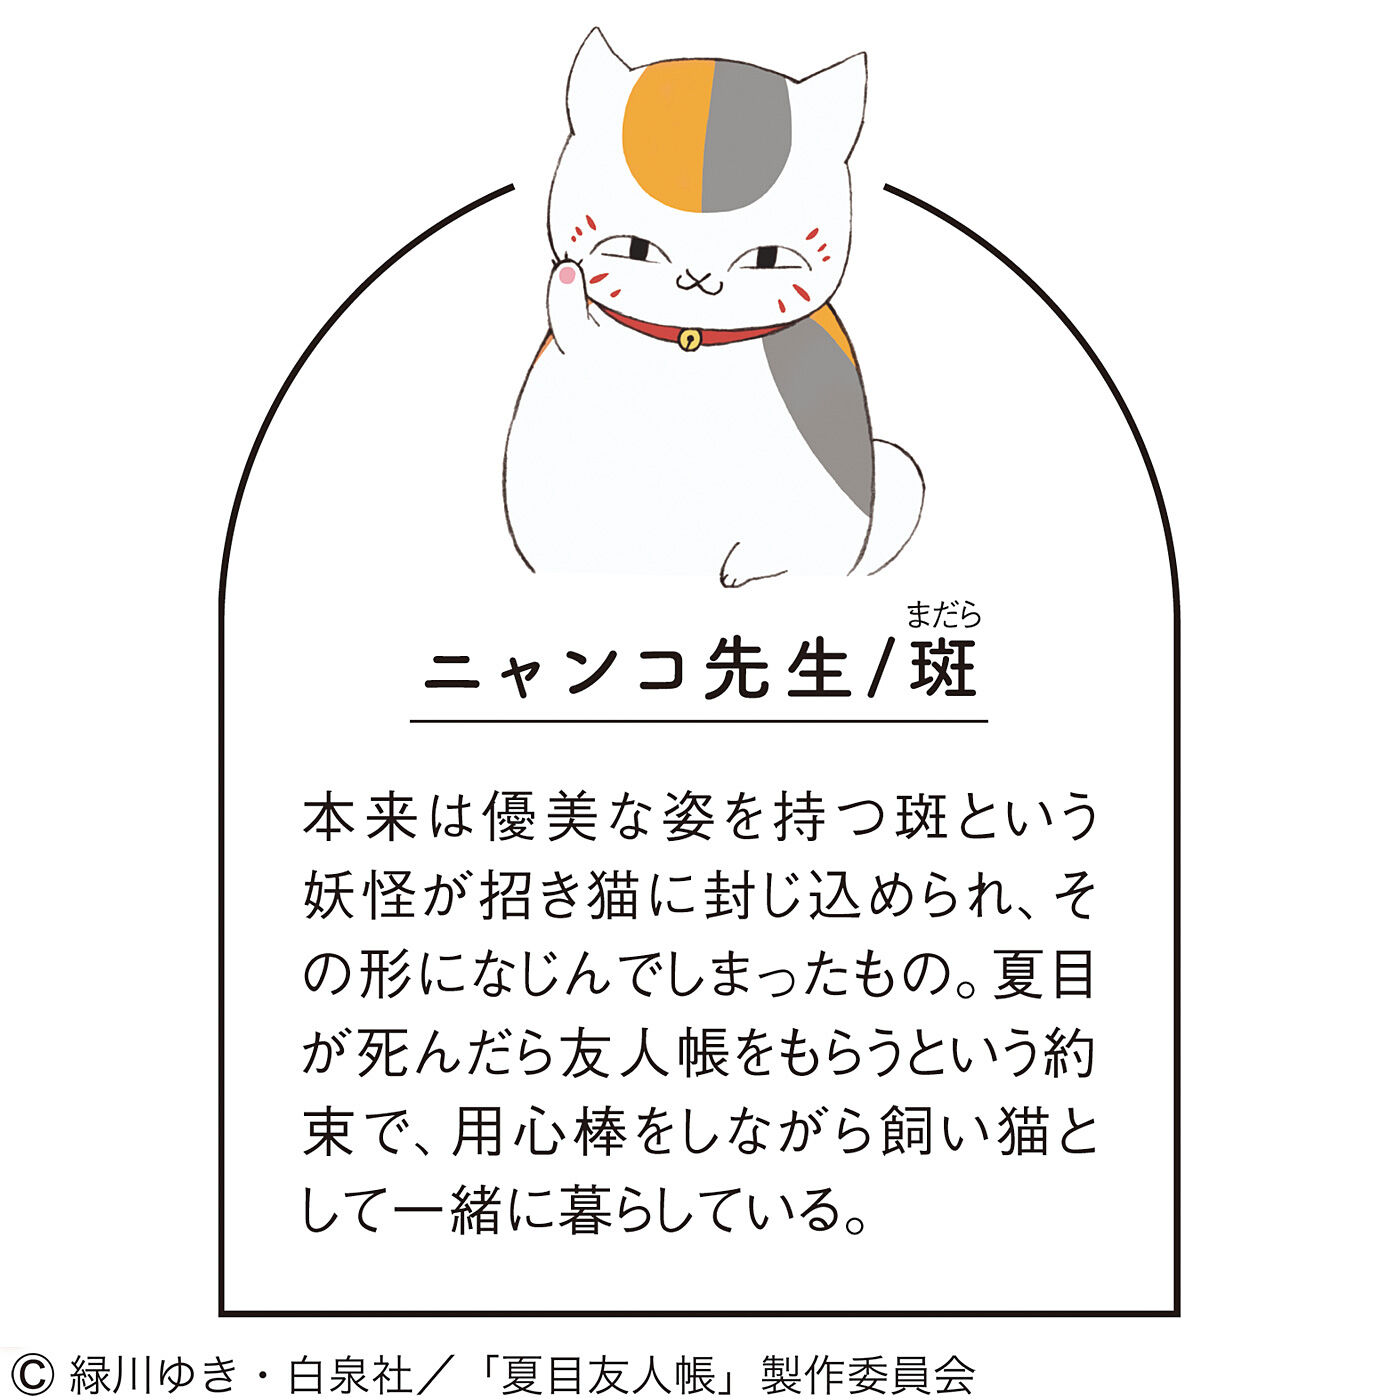 夏目友人帳×猫部 ちょこんとかわいい ニャンコ先生&黒ニャンコのカード